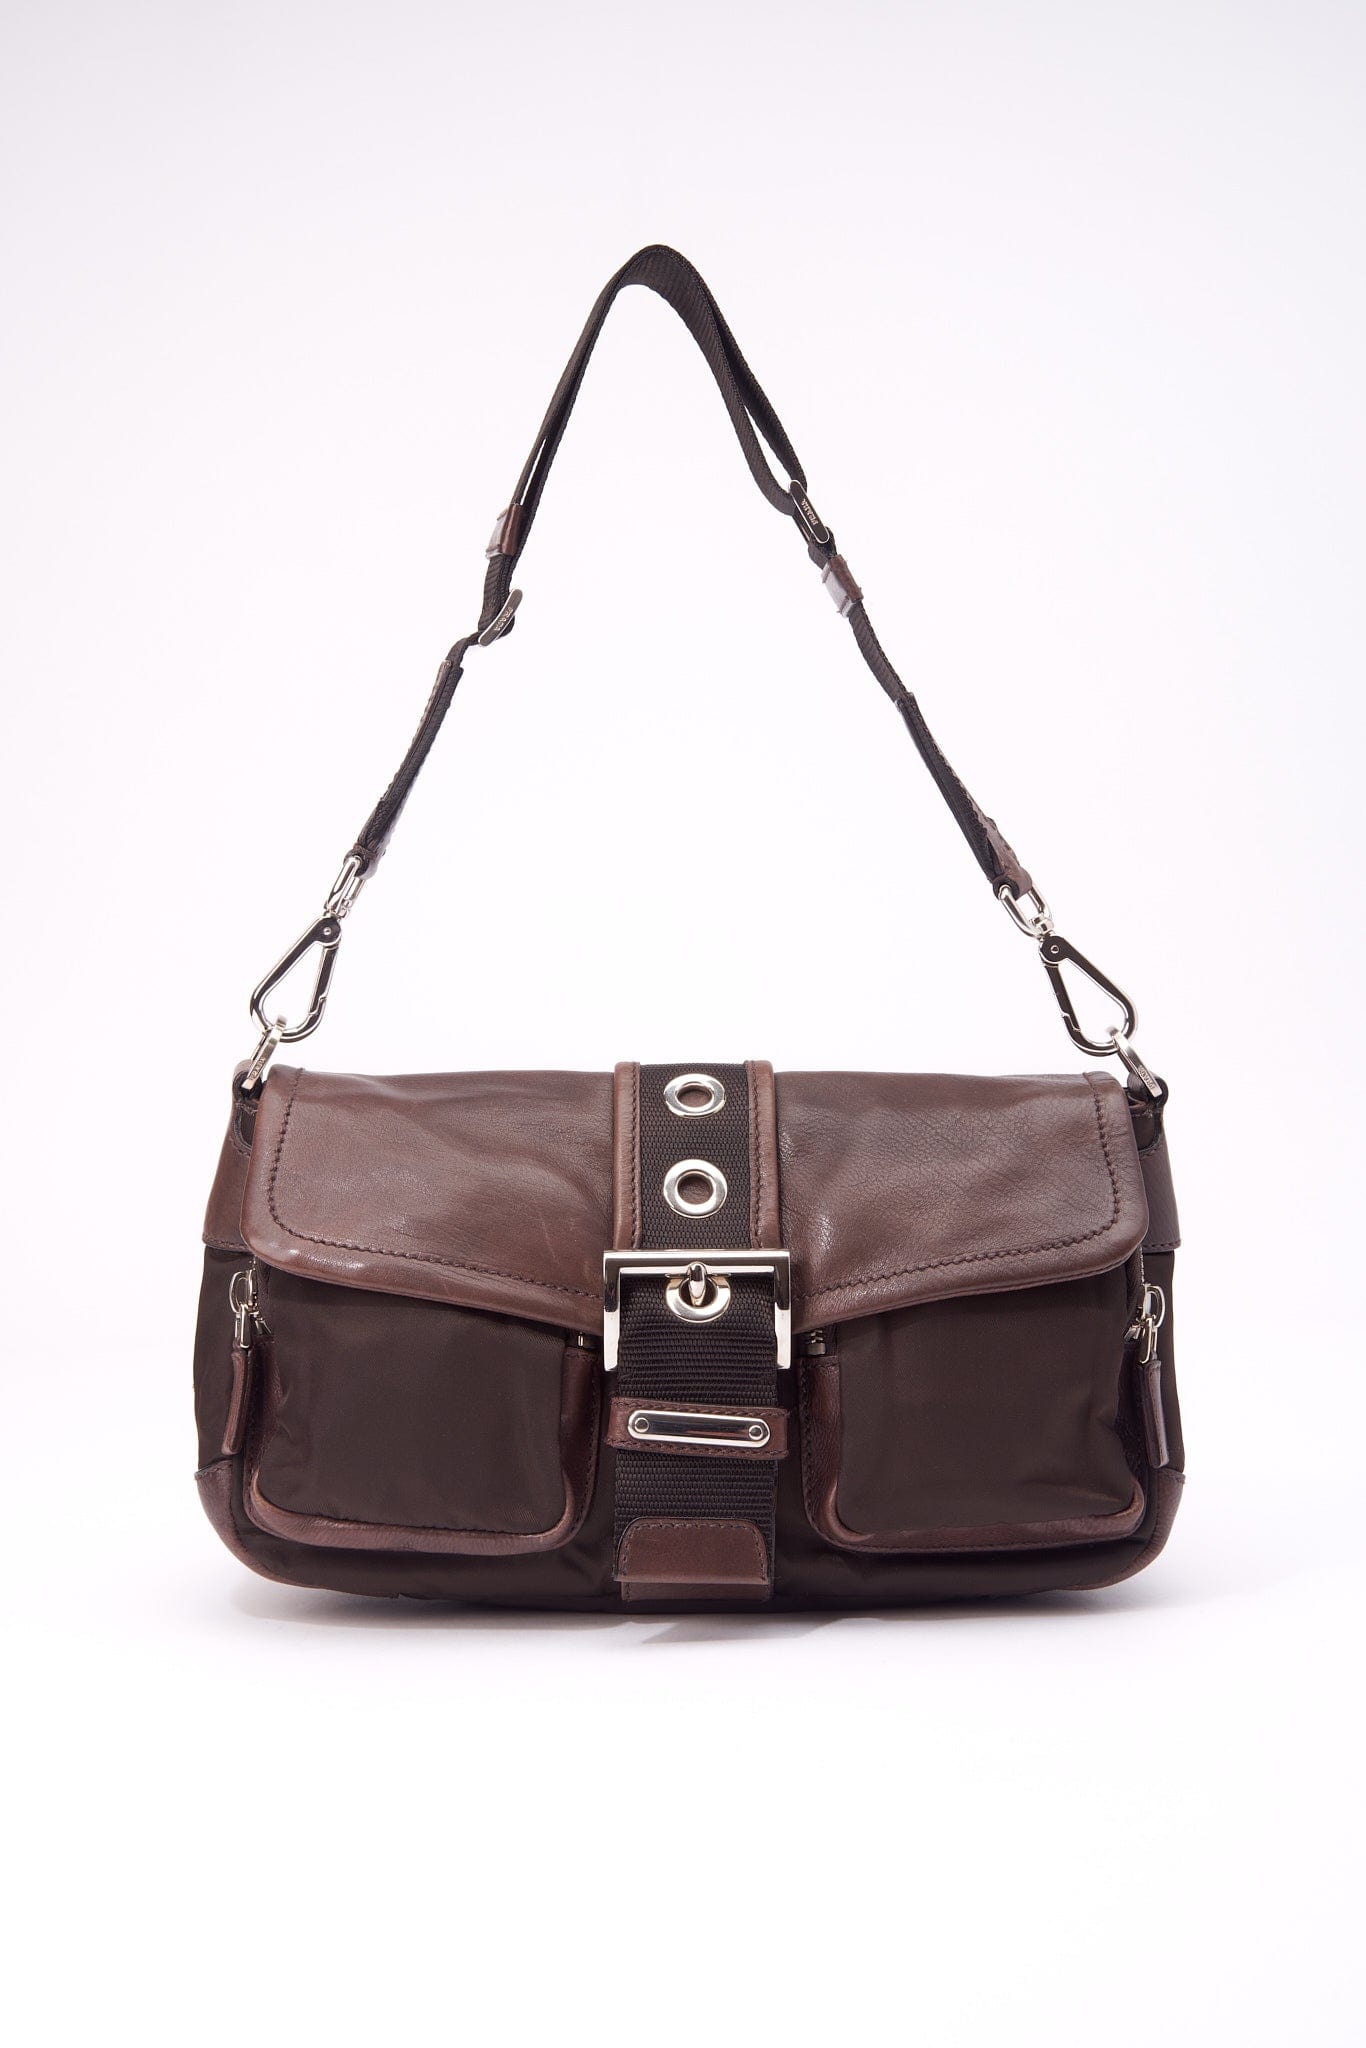 brown leather prada tote bag